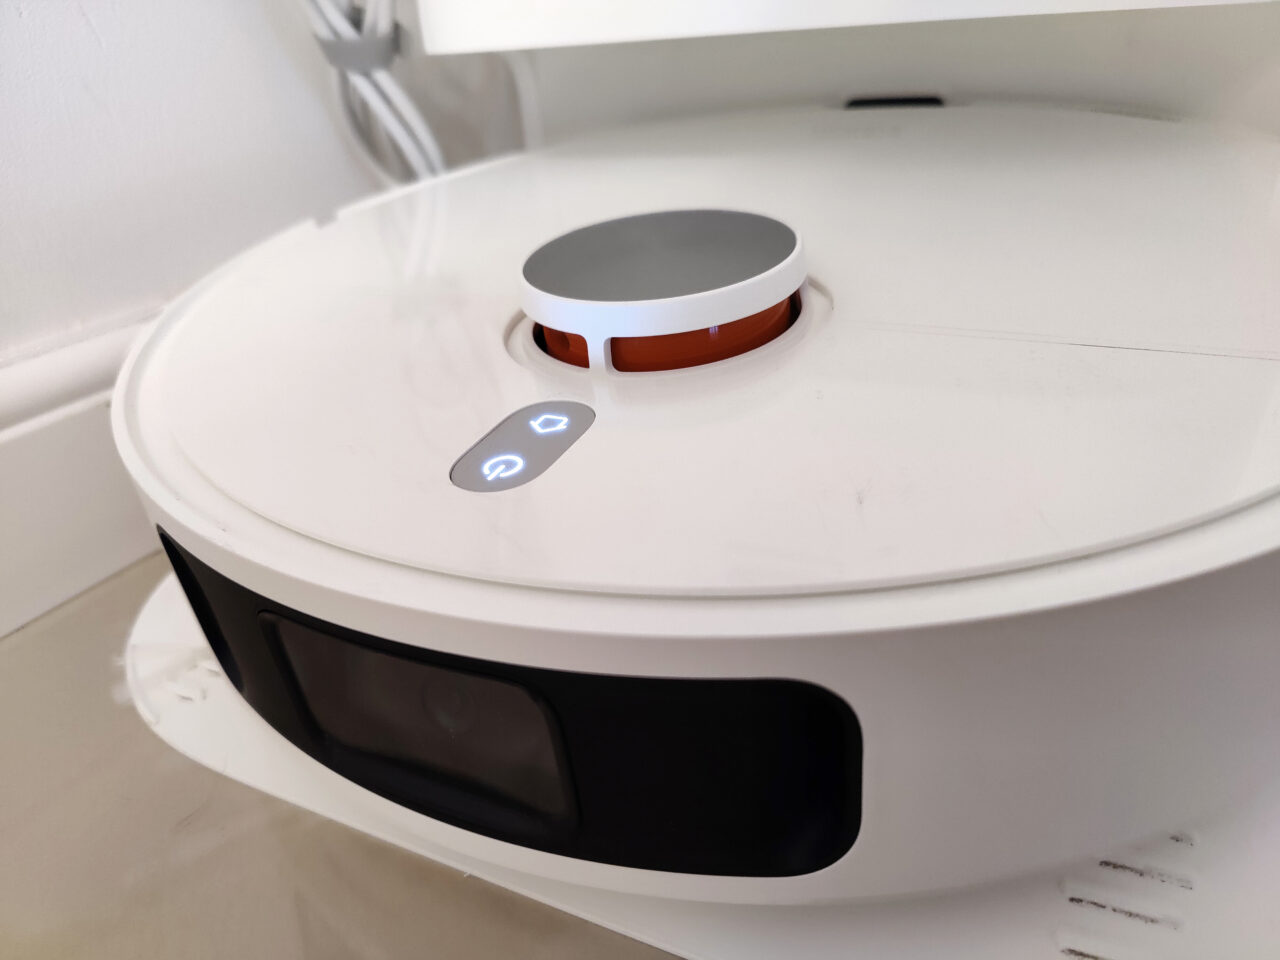 O robô de limpeza branco fica no chão, com botões e um sensor visíveis.